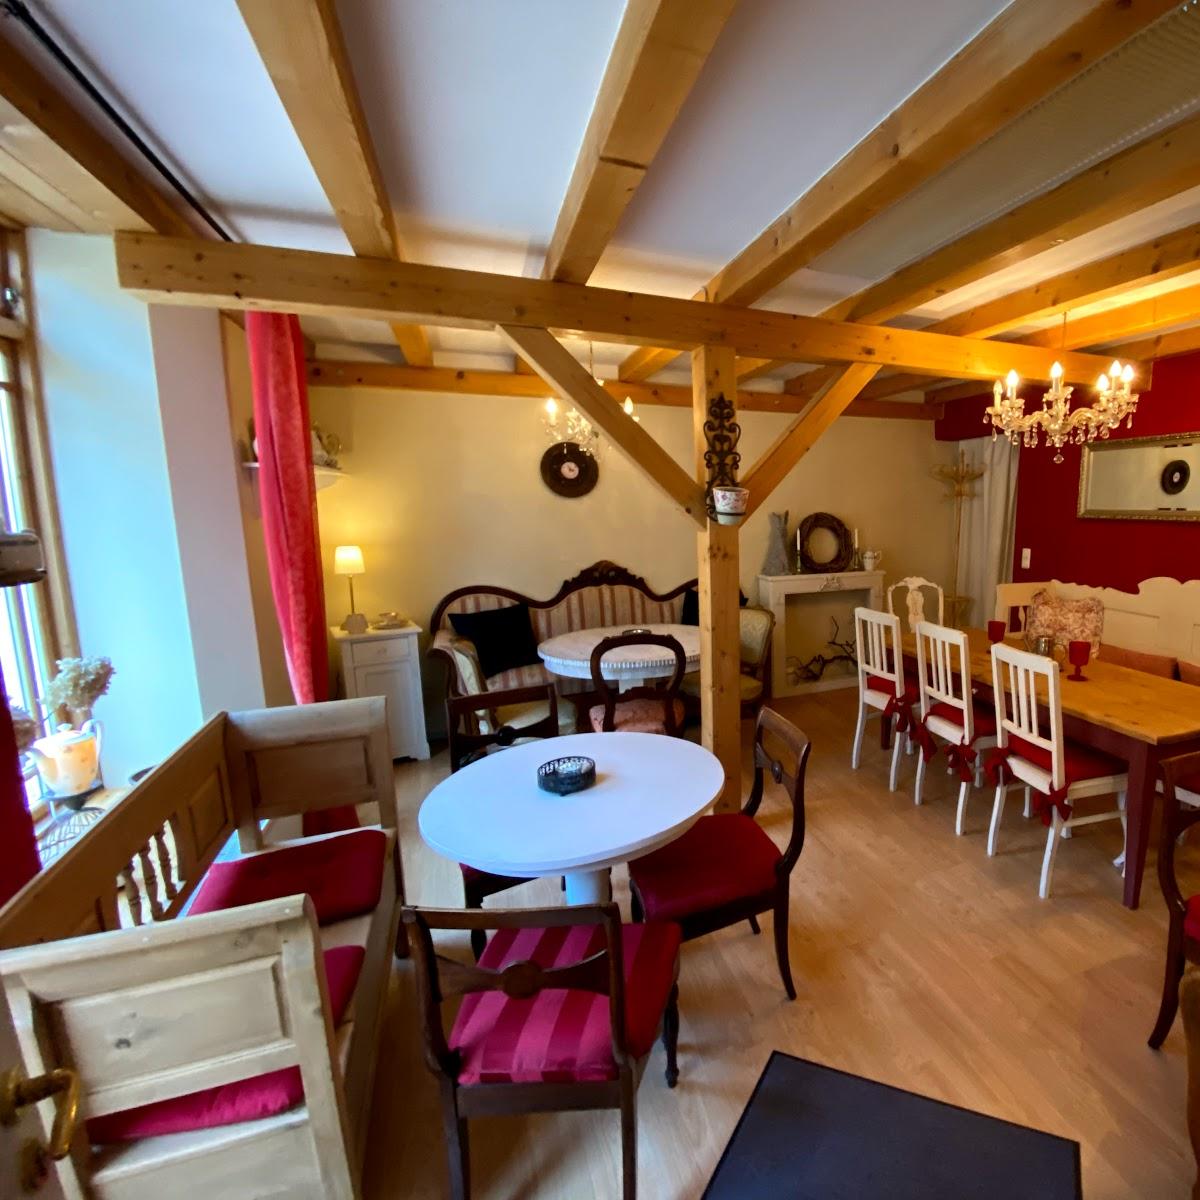 Restaurant "Klostercafe" in Rehna